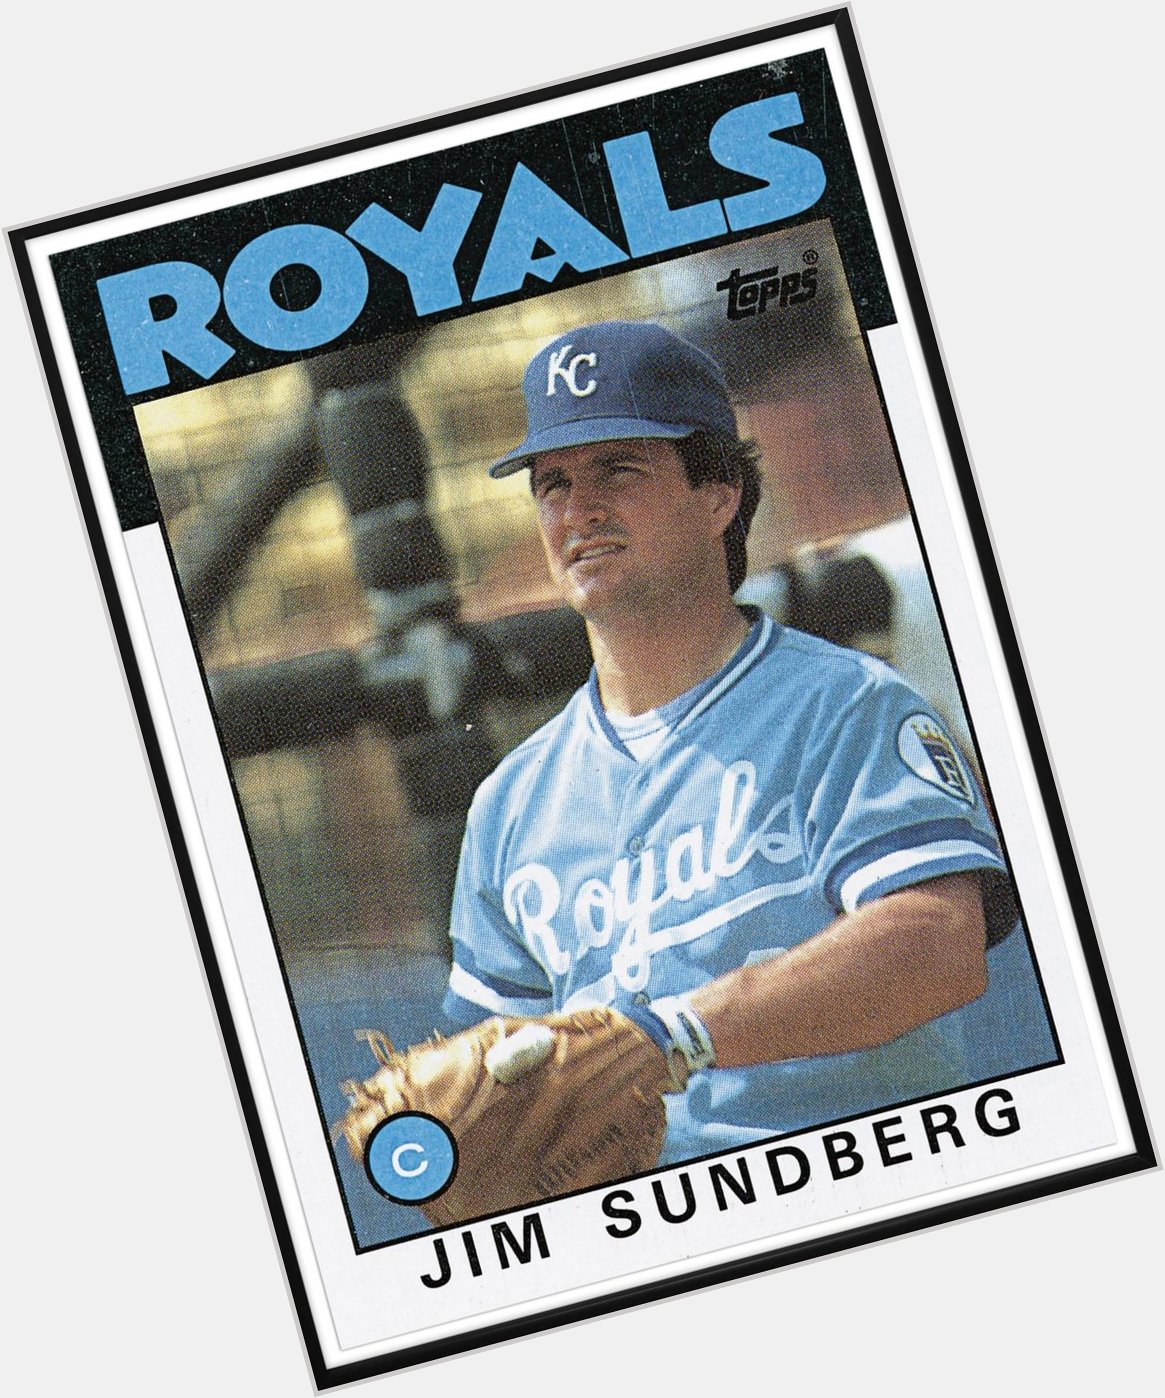 Happy Birthday to former catcher Jim Sundberg - 